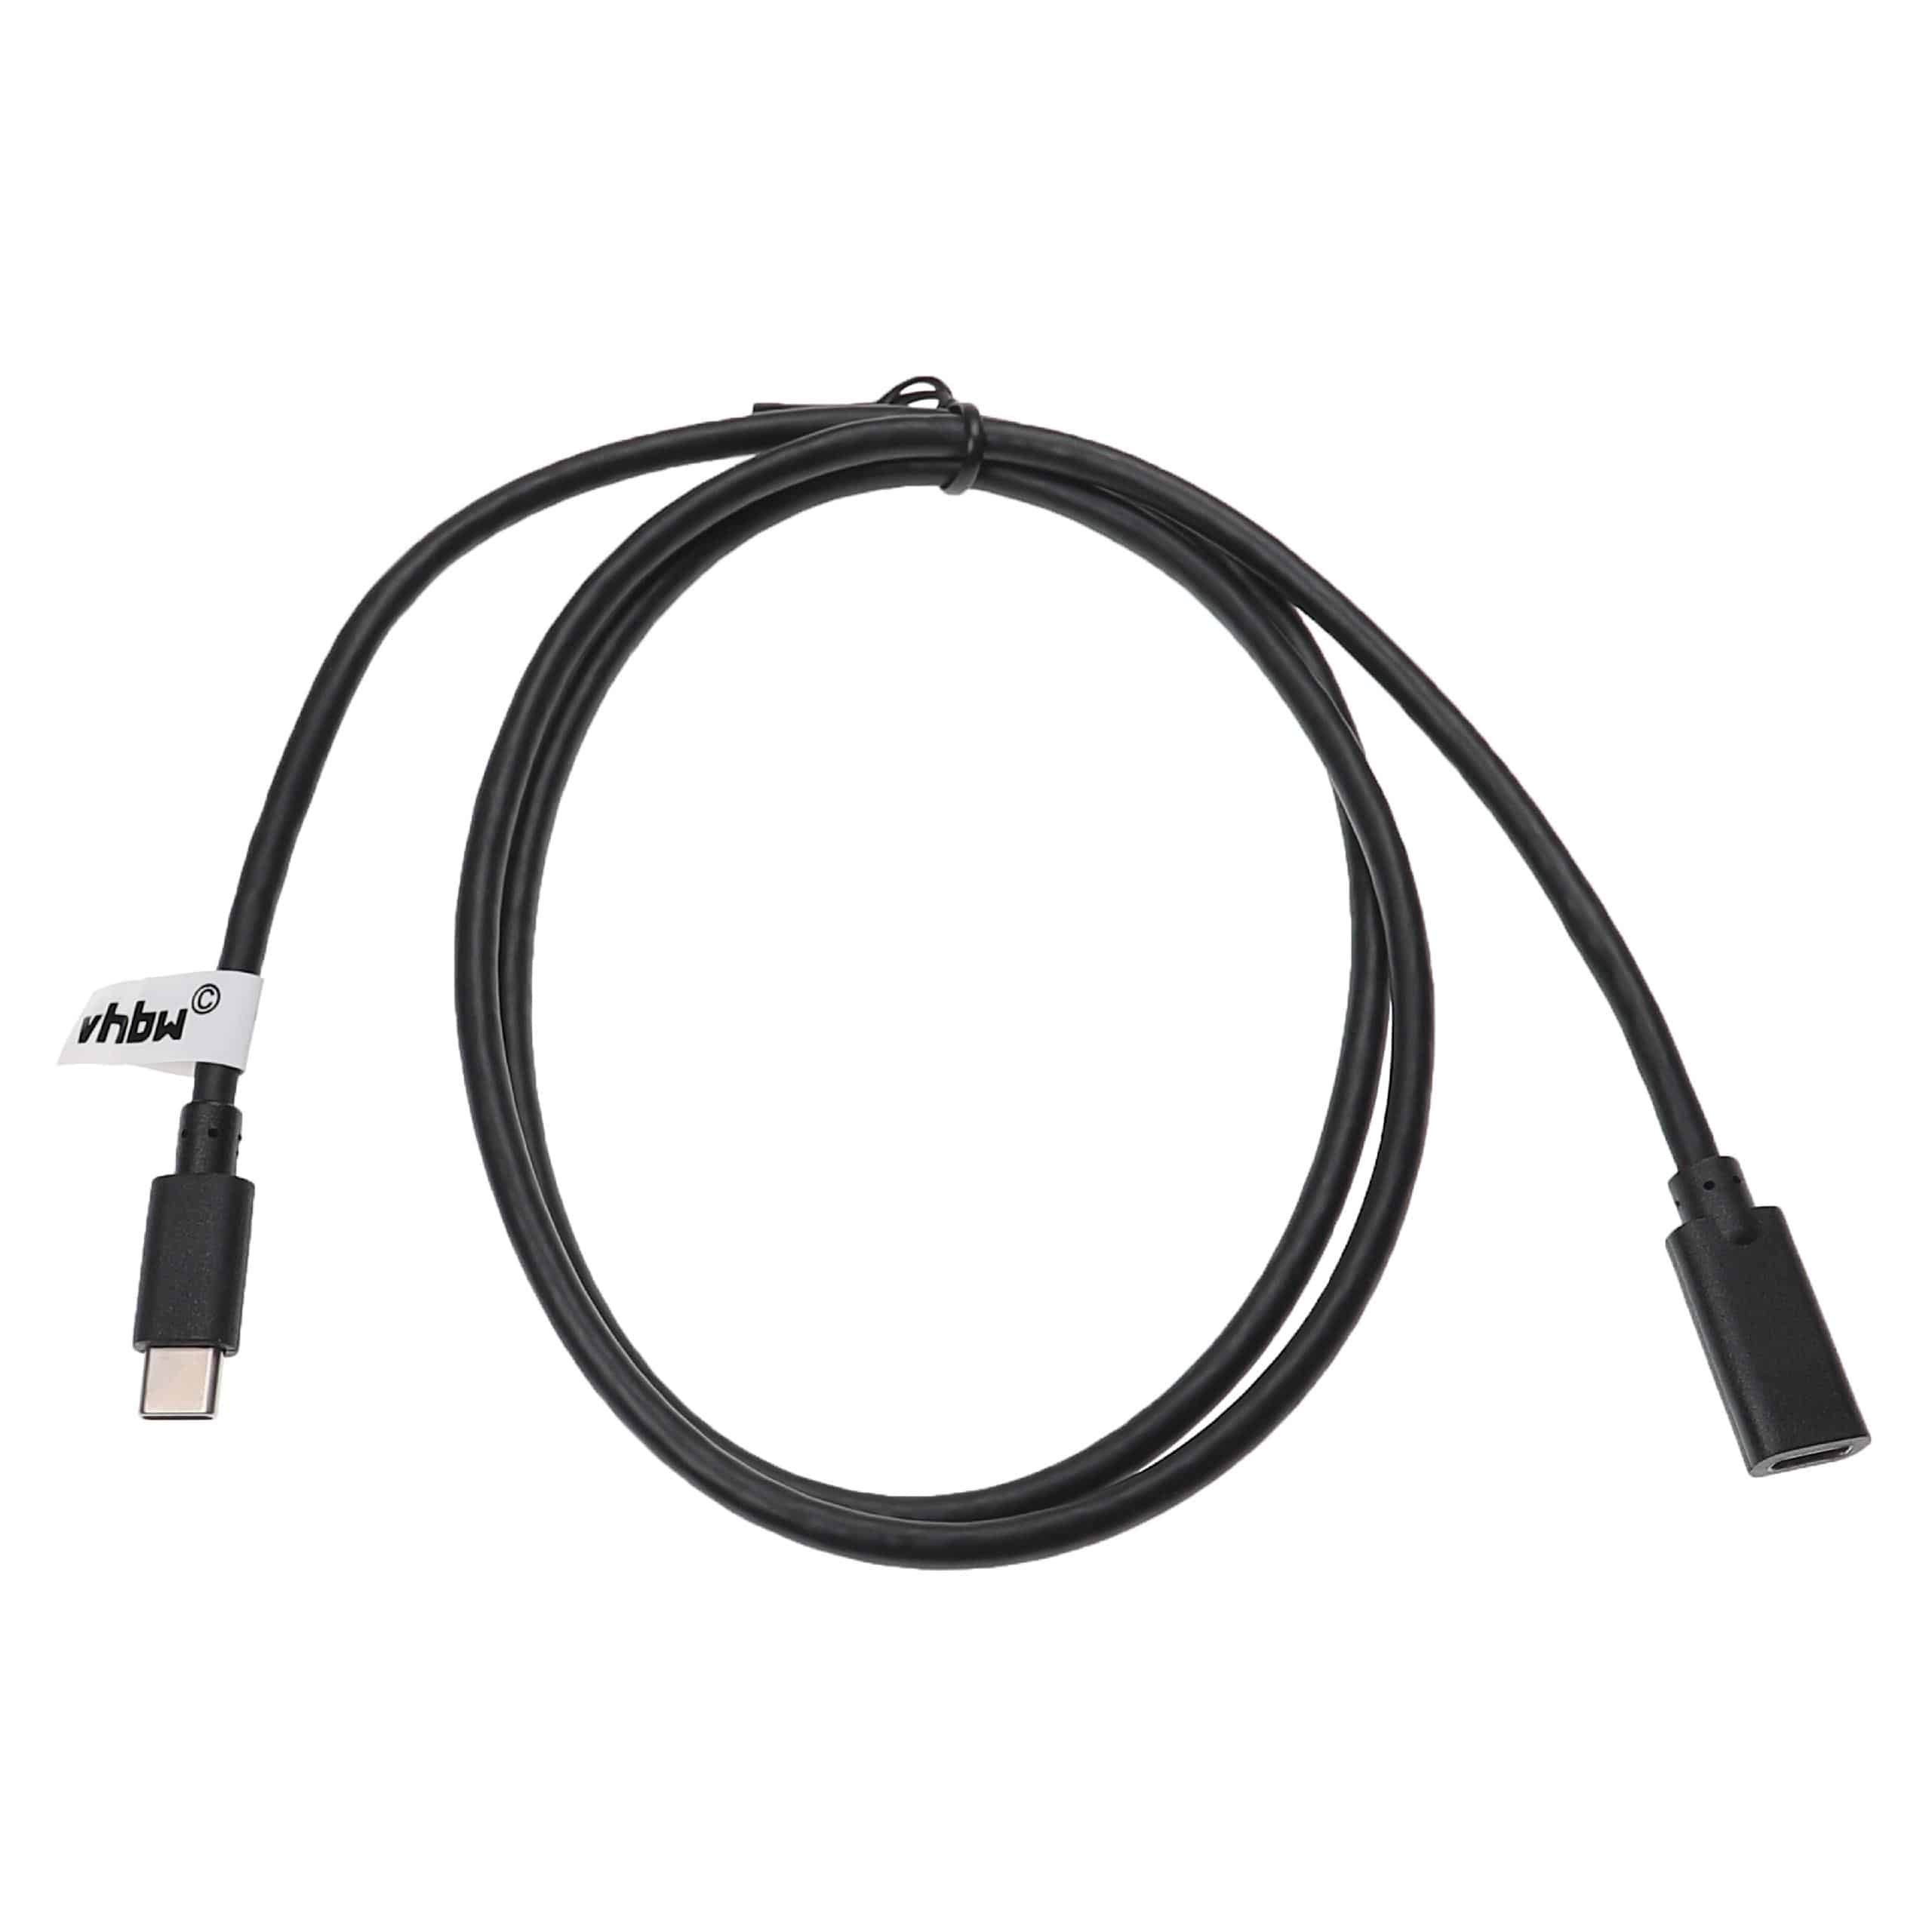 USB-C Verlängerungskabel für diverse Notebooks, Smartphones, Tablets, PCs - 1 m Schwarz, USB 3.1 C Kabel